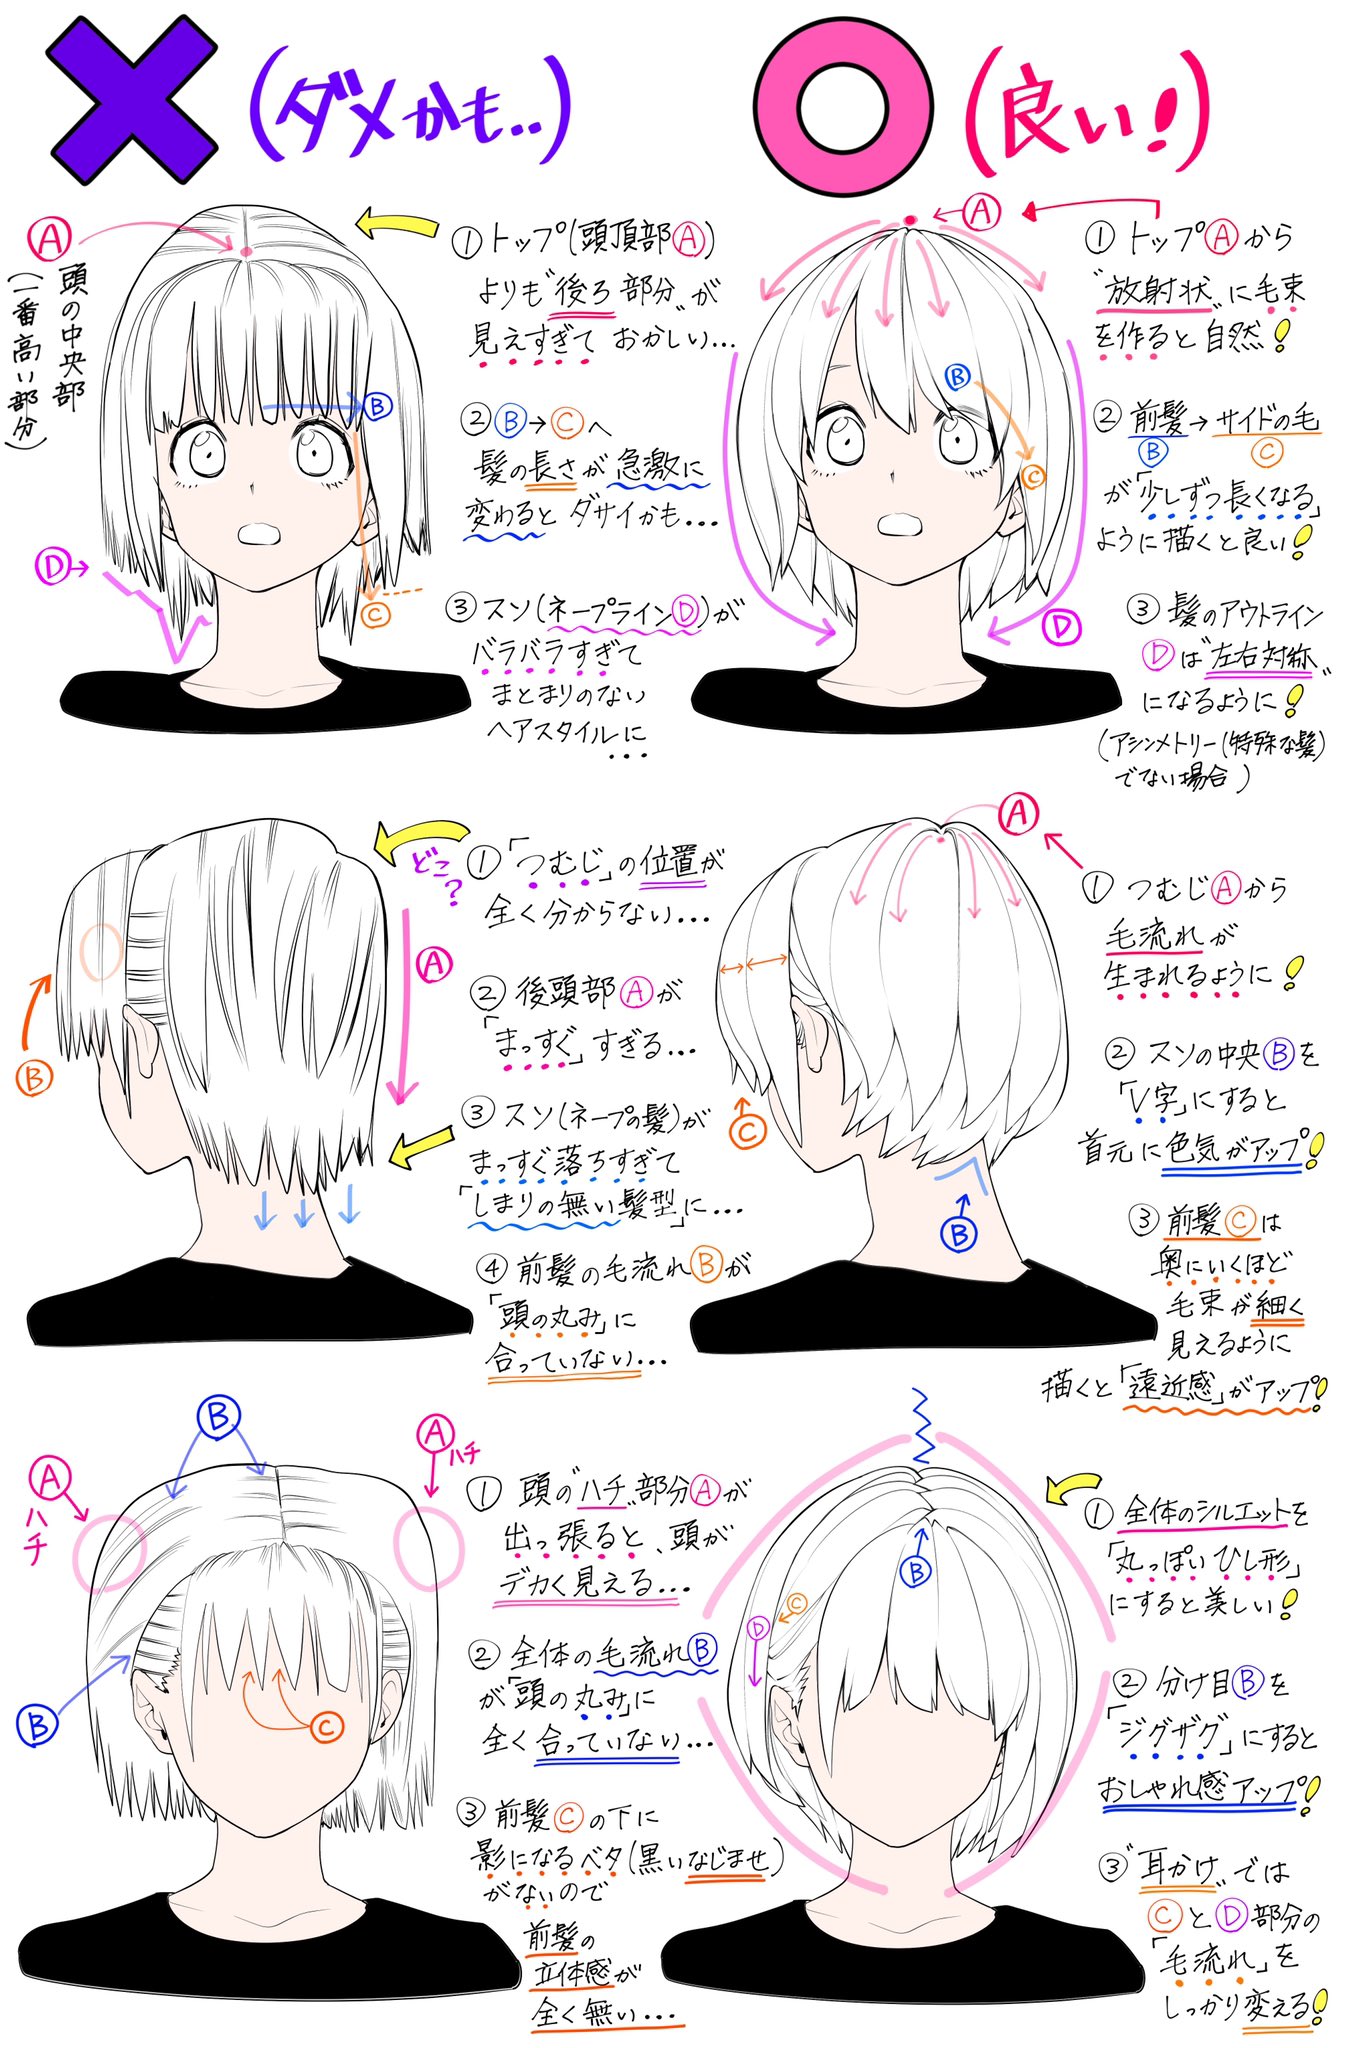 吉村拓也 イラスト講座 Sur Twitter ショートヘアの描き方 女の子の髪型が上達するための ダメかも と 良いかも